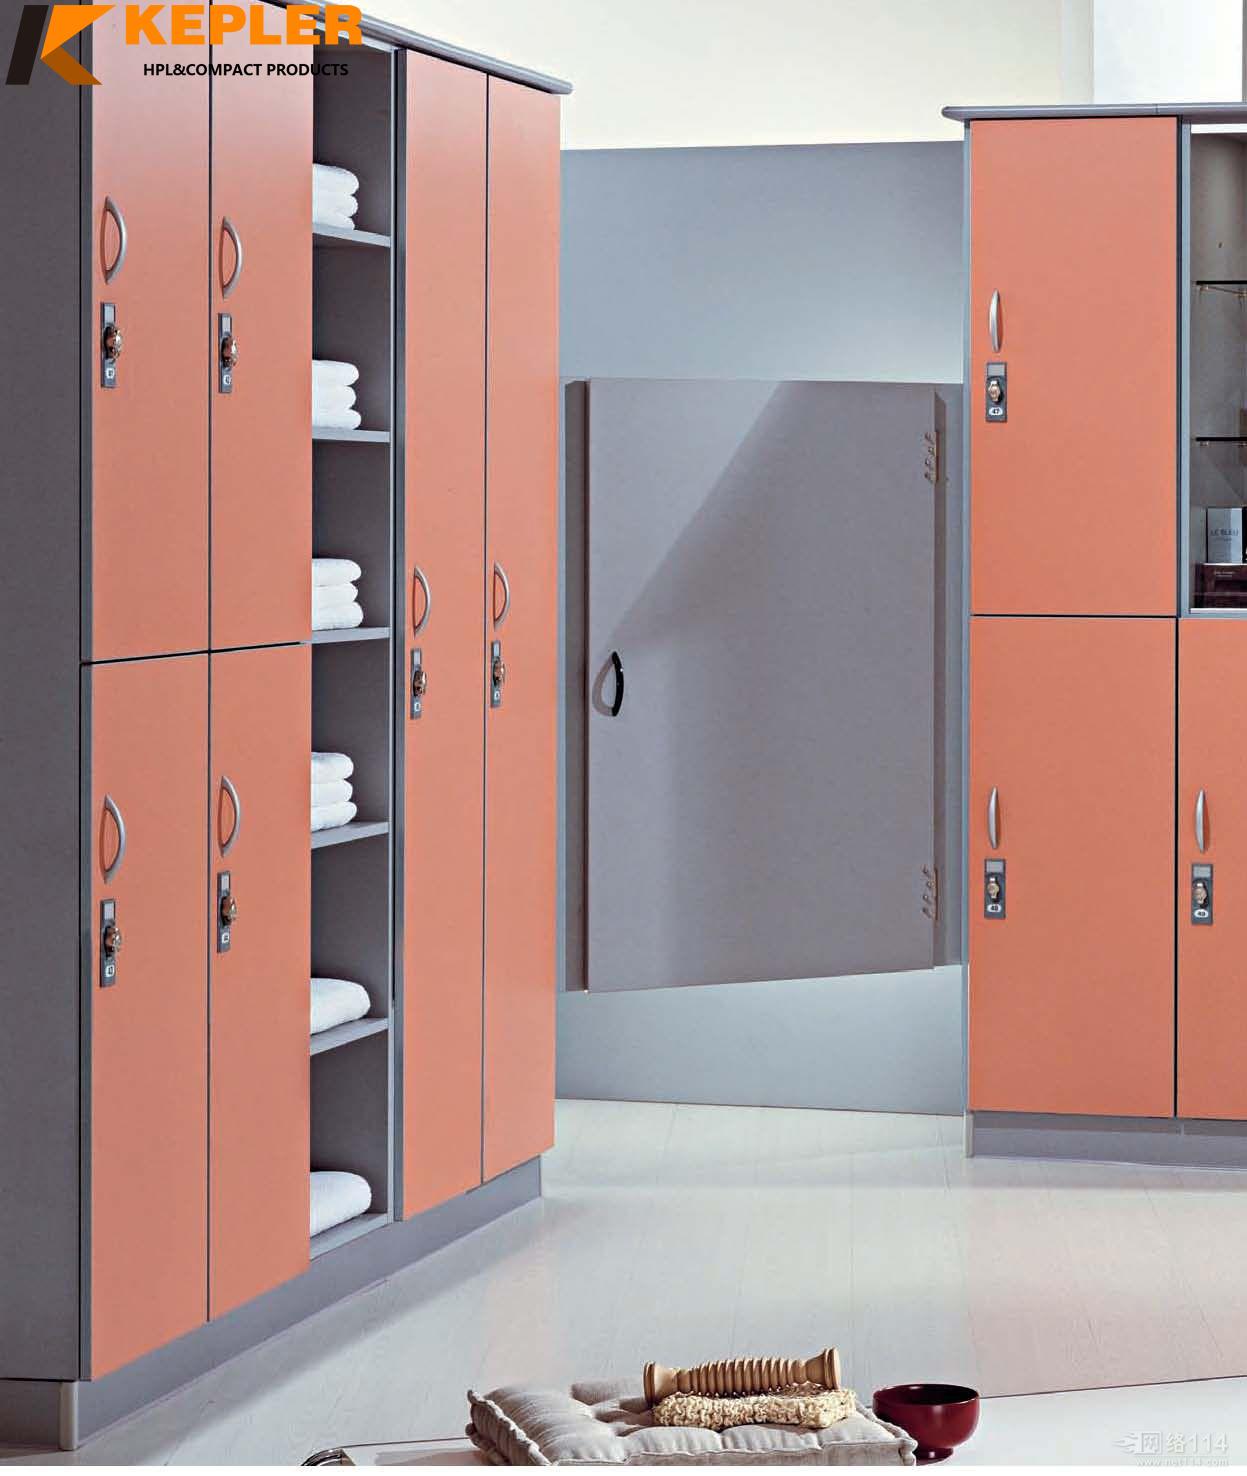 Kepler 12mm phenolic compact laminate storage hpl locker manufacturer